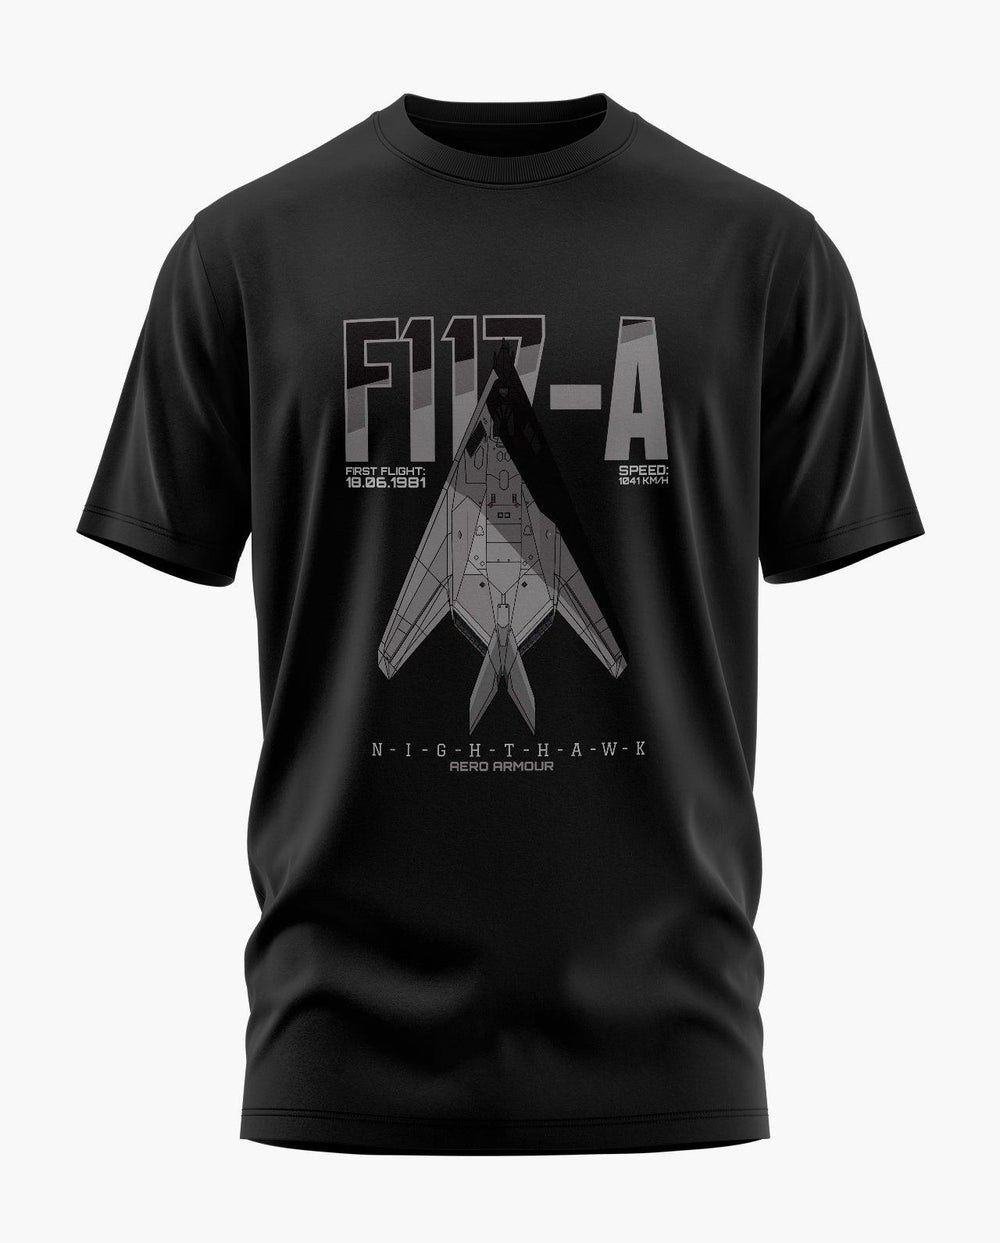 F117-A Nighthawk T-Shirt - Aero Armour